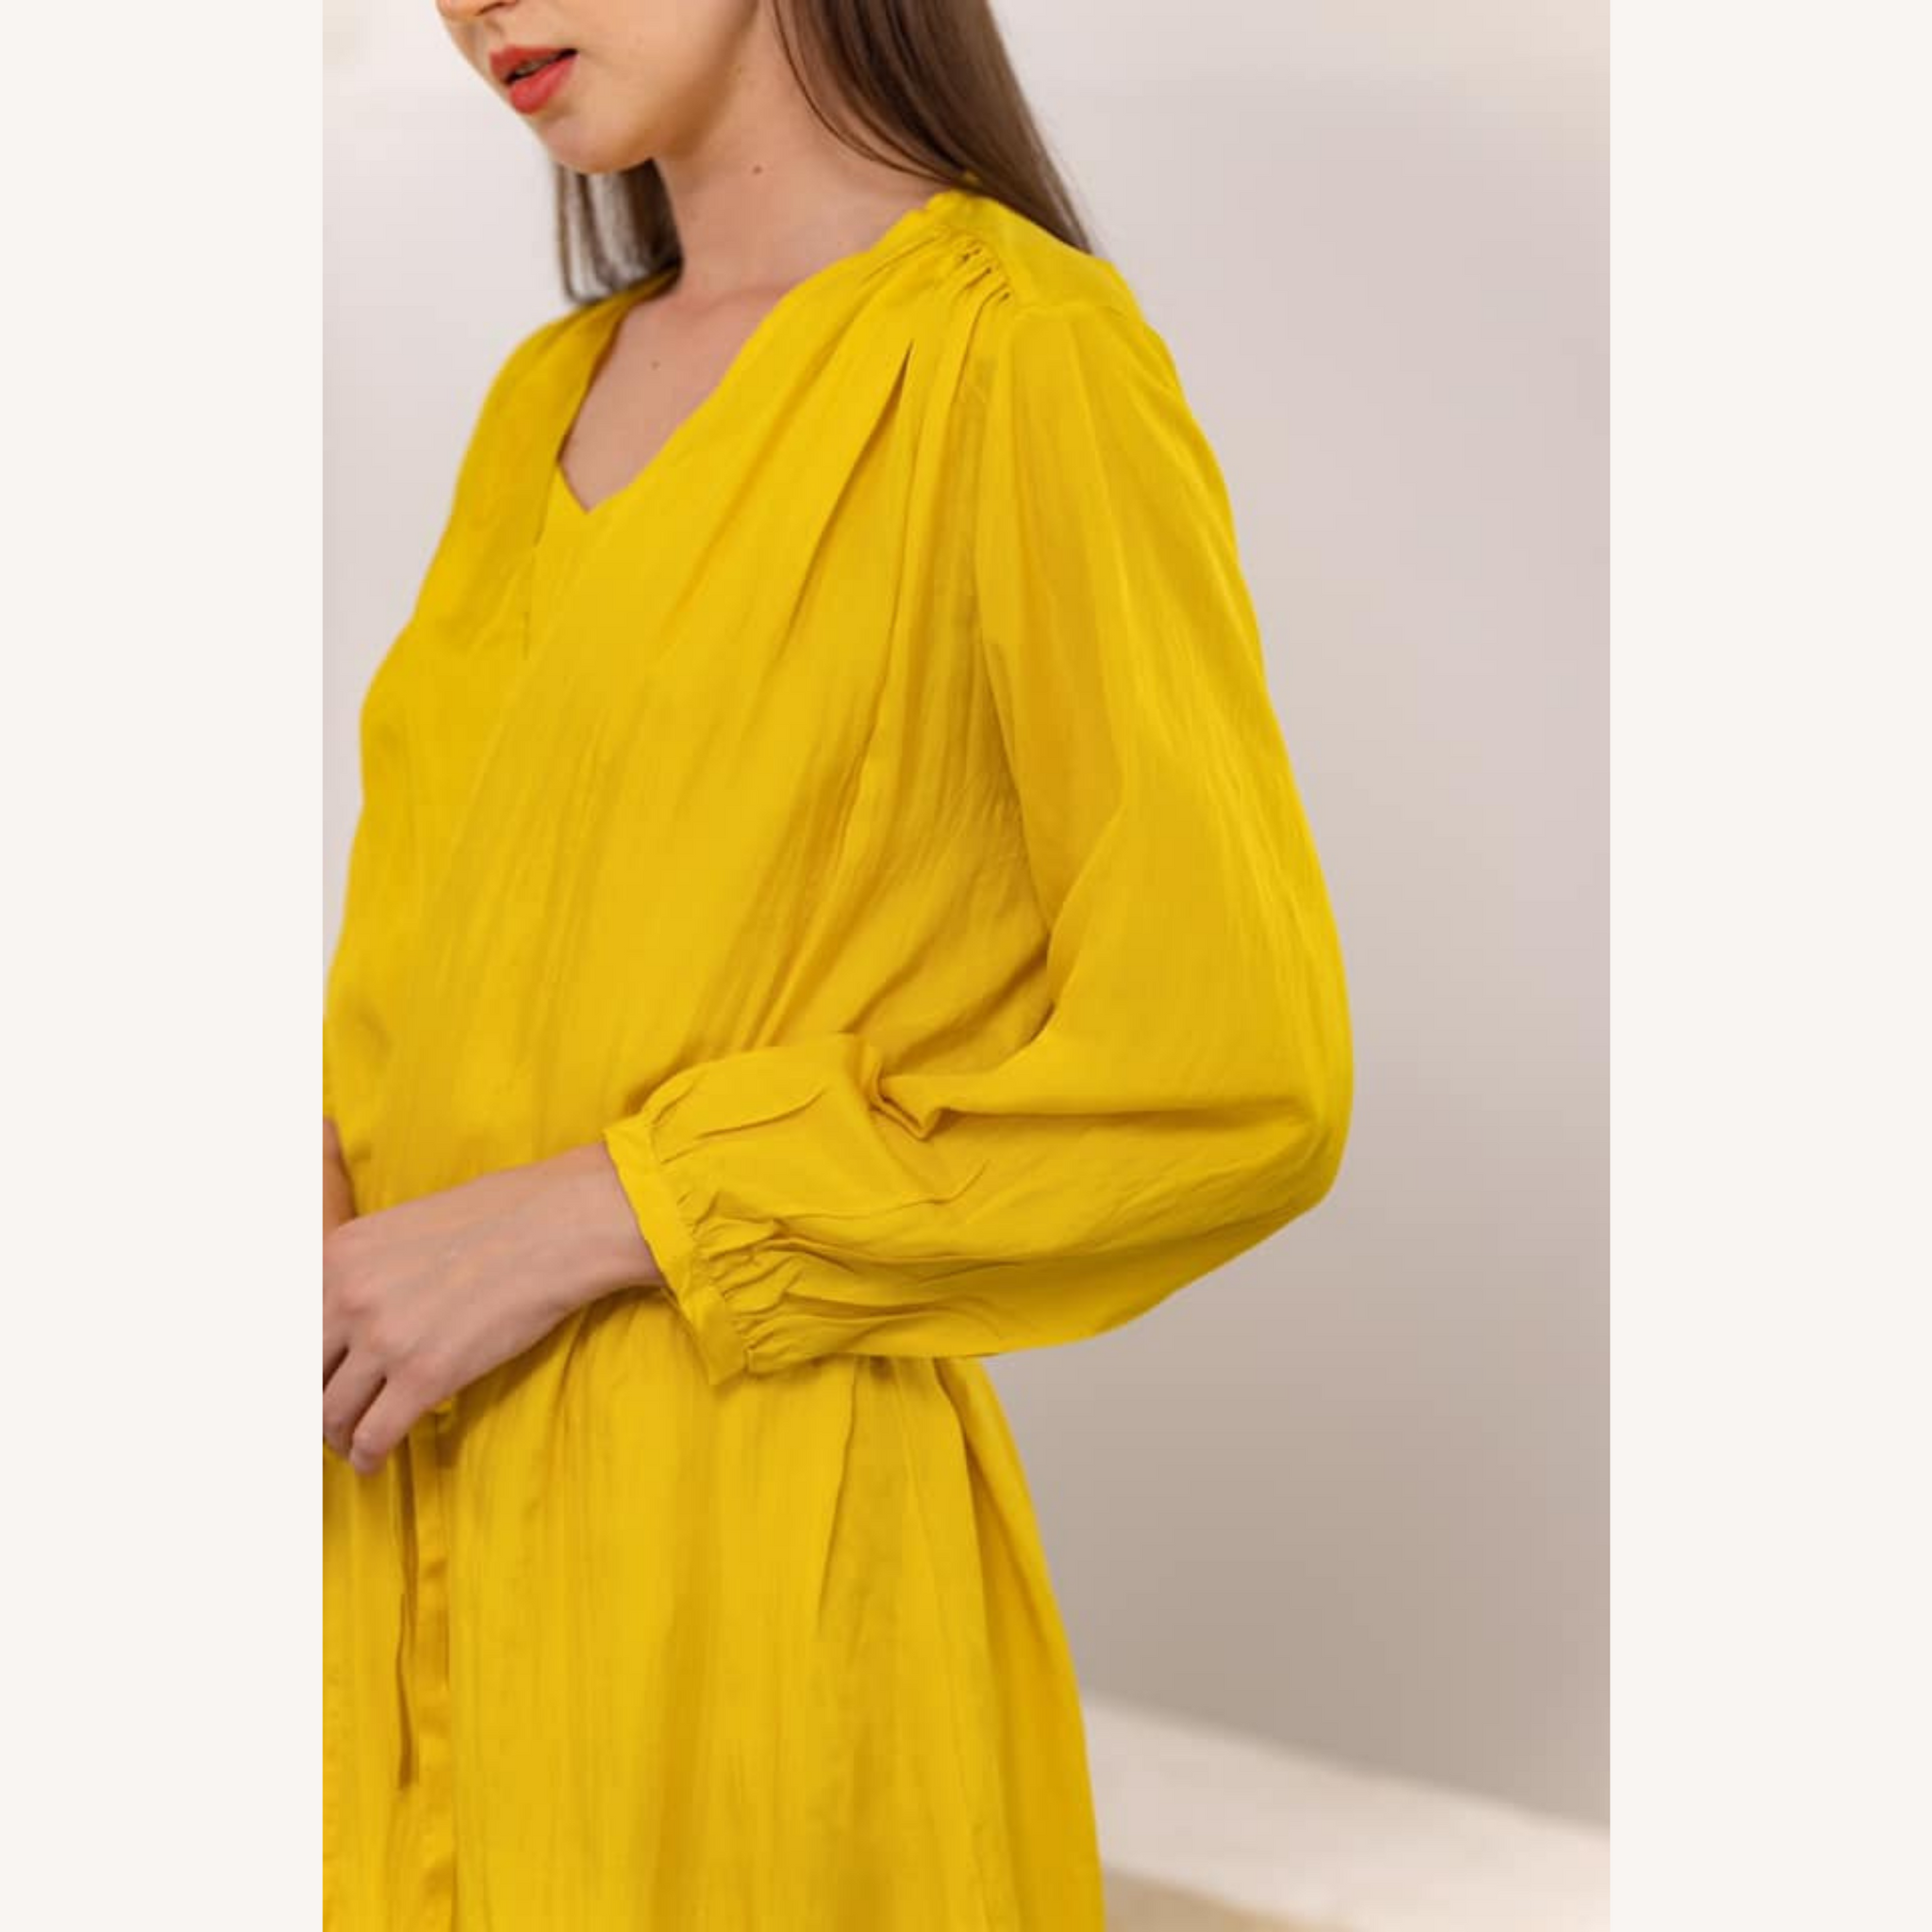 Washable Silk Robe and Dress Set - Luxury Slip Dress Set